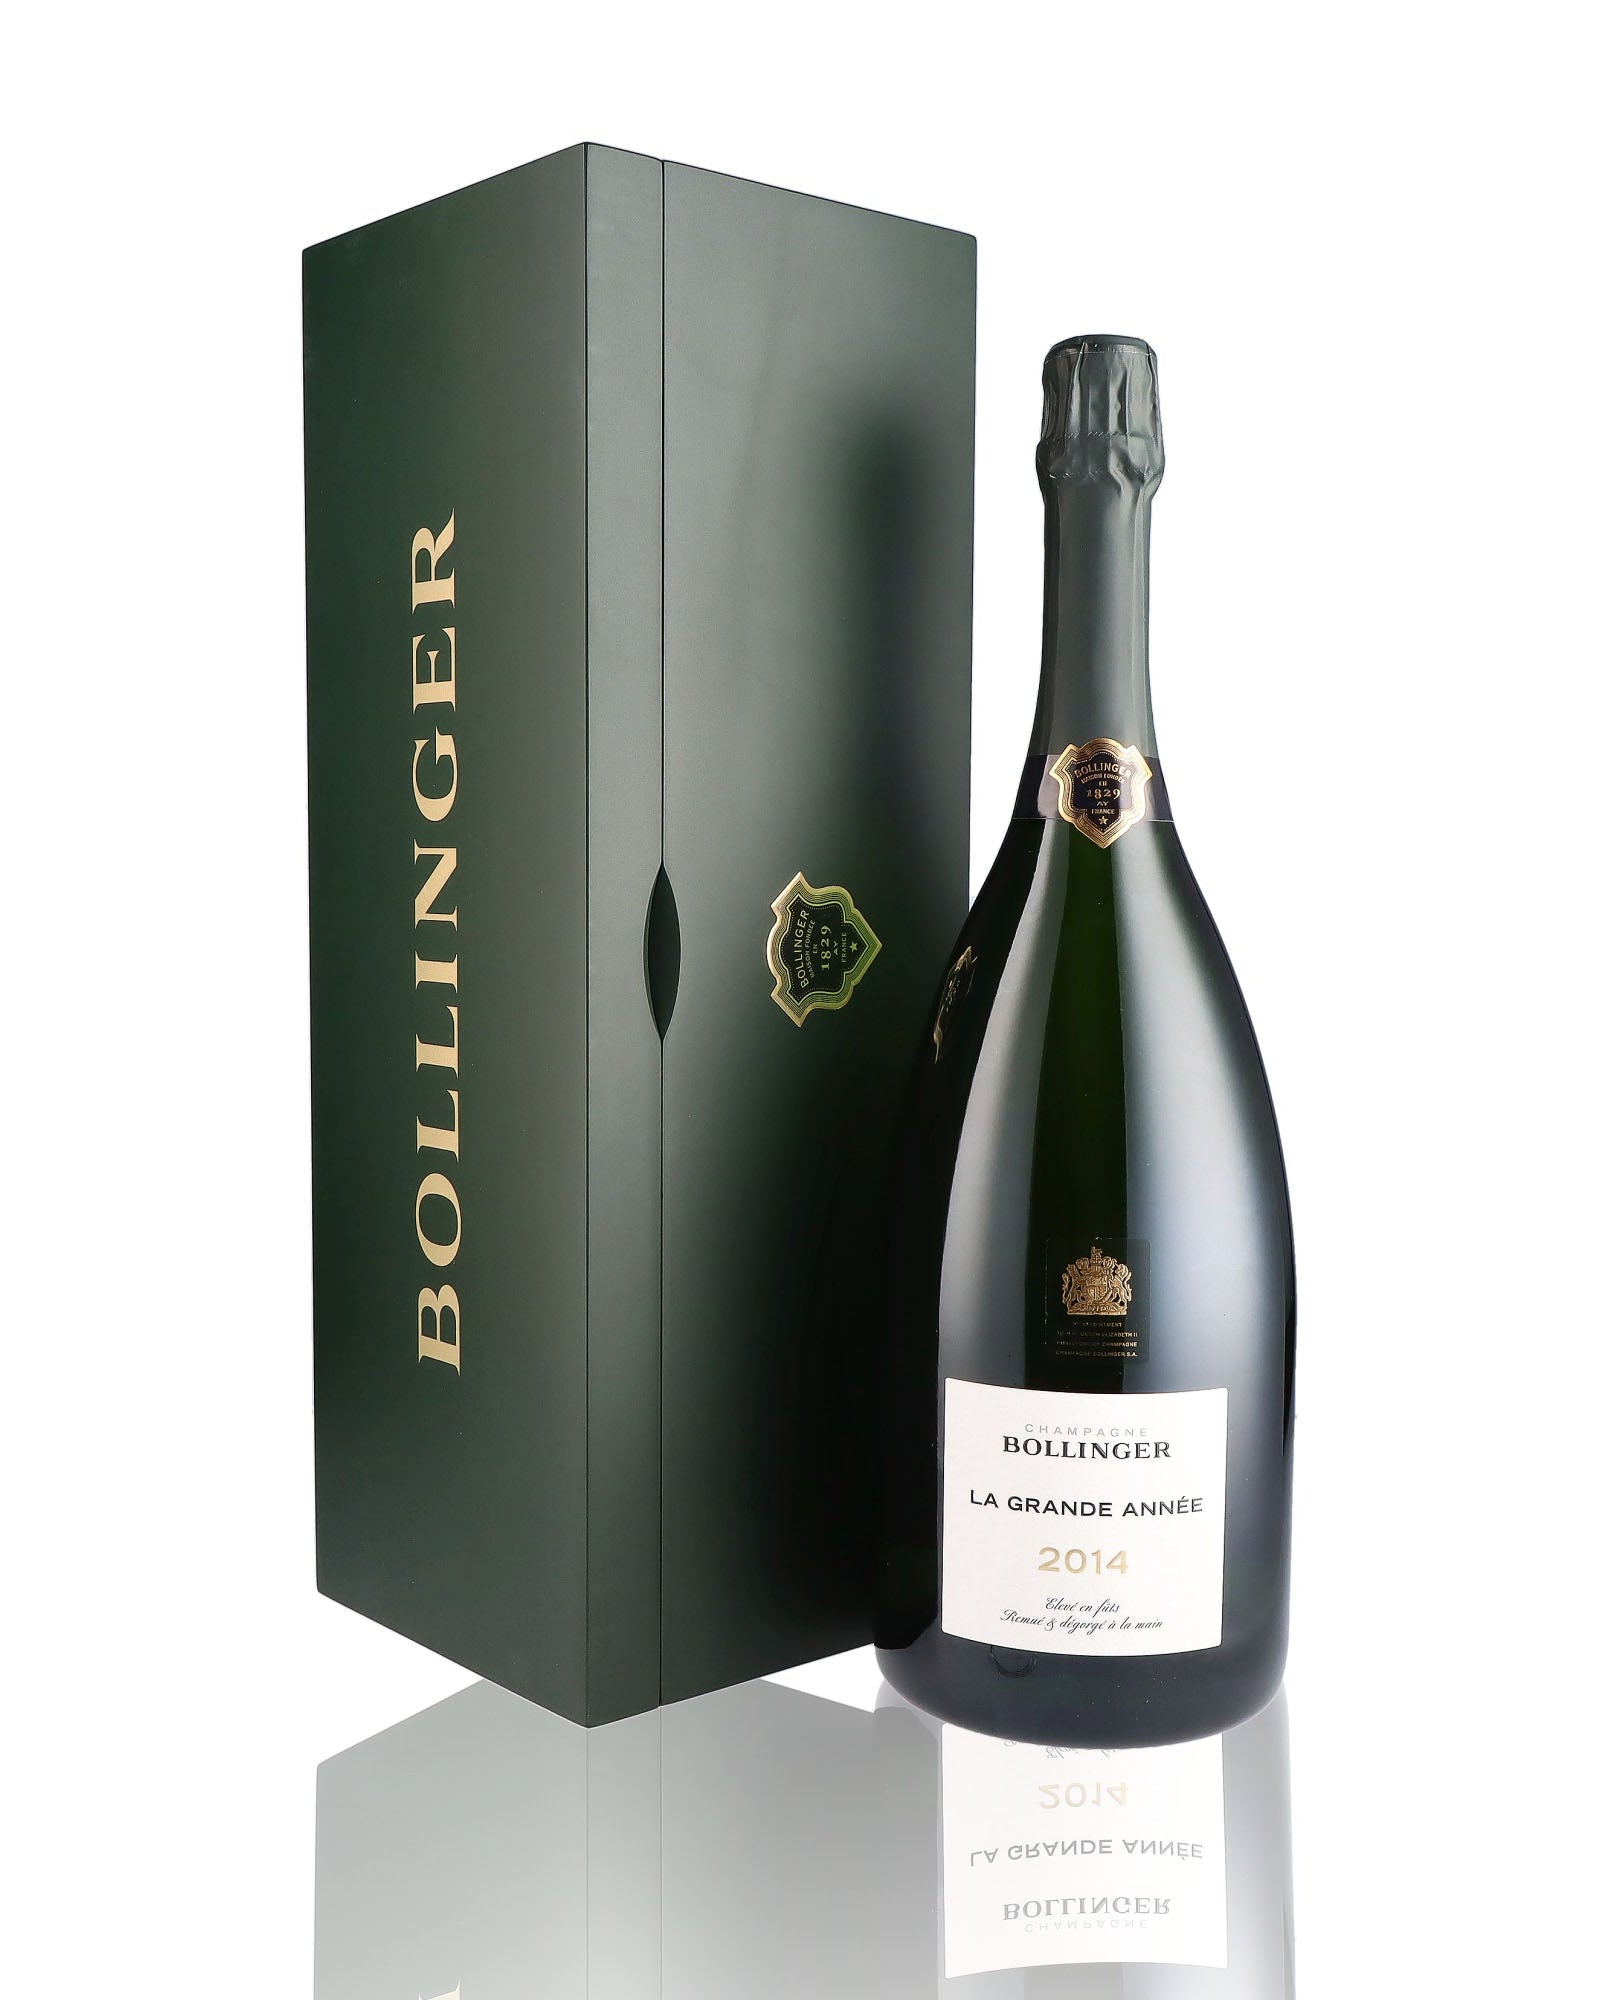 Une bouteille de champagne de la marque Bollinger, de type brut, nommée la grande année, millésime 2014, en version magnum.